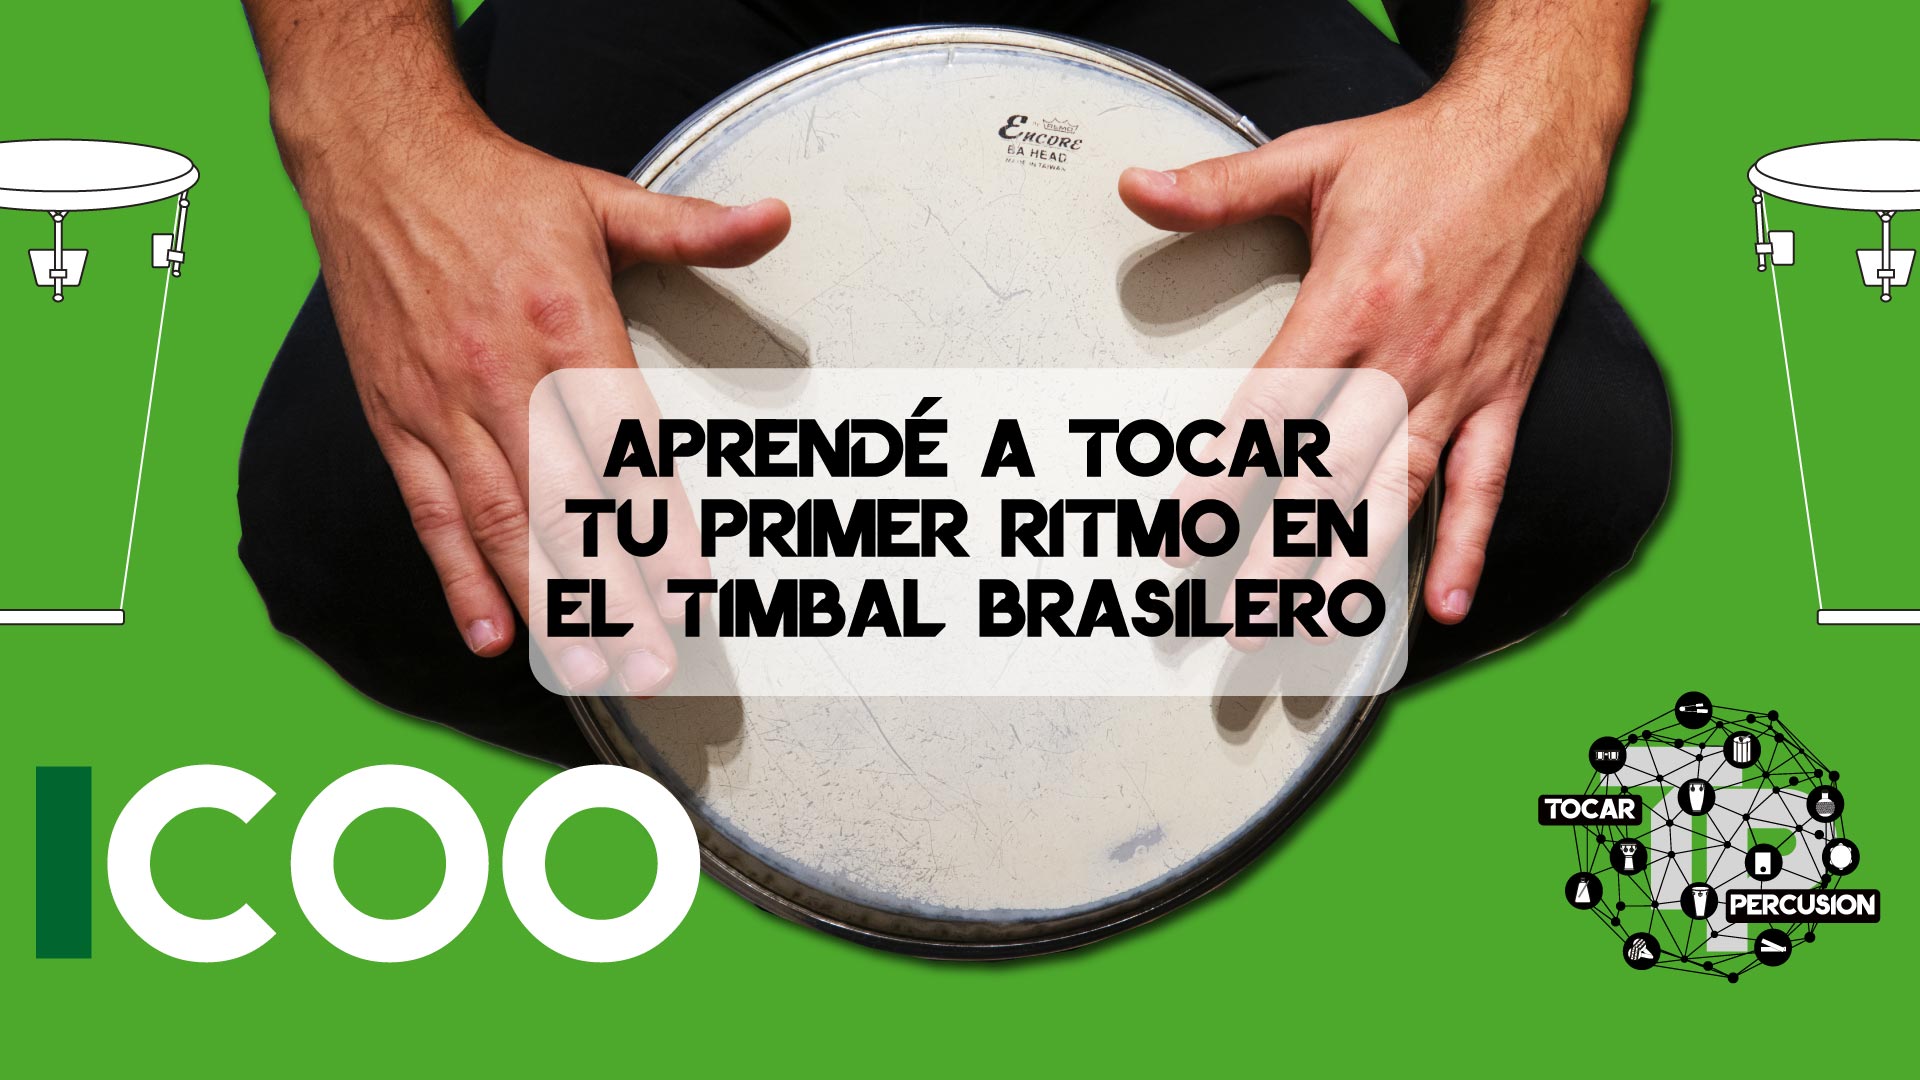 Tocar-Percusion-Curso-Gratis-Aprende-a-tocar-tu-primer-ritmo-en-el-timbal-brasilero-ES-1.jpg